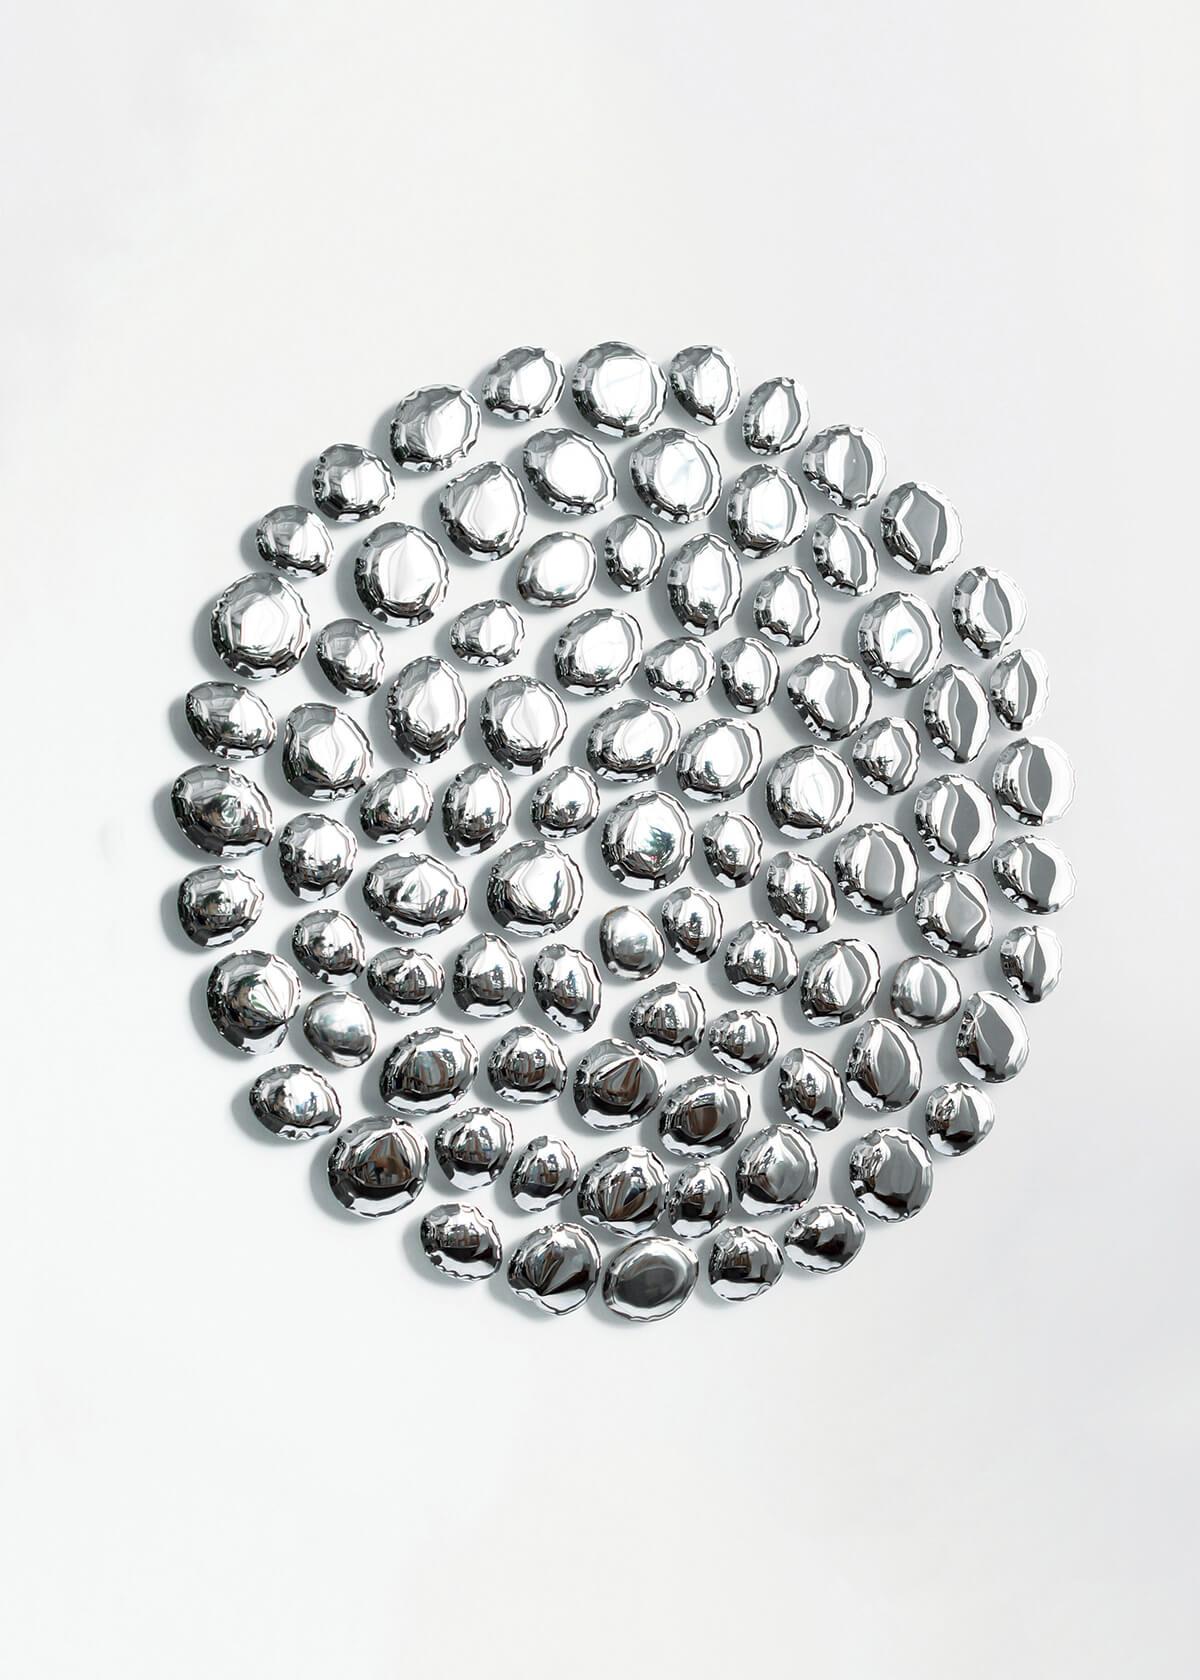 Wandskulptur 'Merkur' von Zieta
Rostfreier Stahl

Durchmesser 150 cm x Tiefe 7 cm

MERCURY ist eine reflektierende Installation aus 89 luftgefüllten, wulstigen, steinartigen Strukturen, die einen ungeordneten Kreis bilden. Die Konstellation der